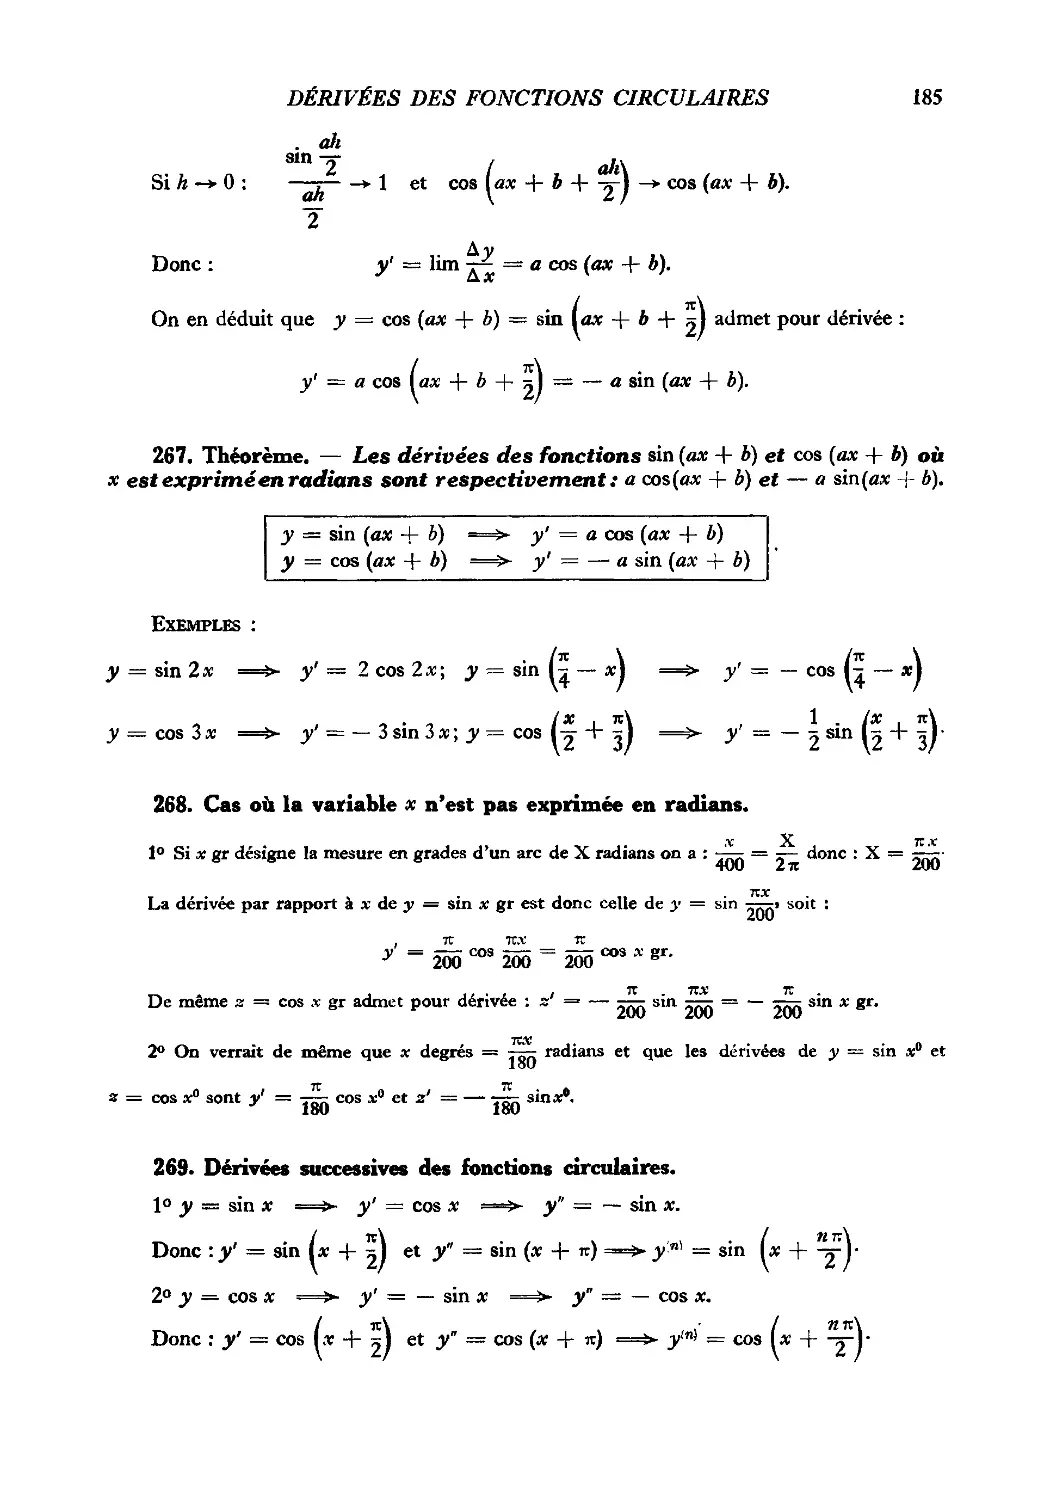 267. Théorème
268. Cas où la variable x n’est pas exprimée en radians
269. dérivées successives des fonctions circulaires